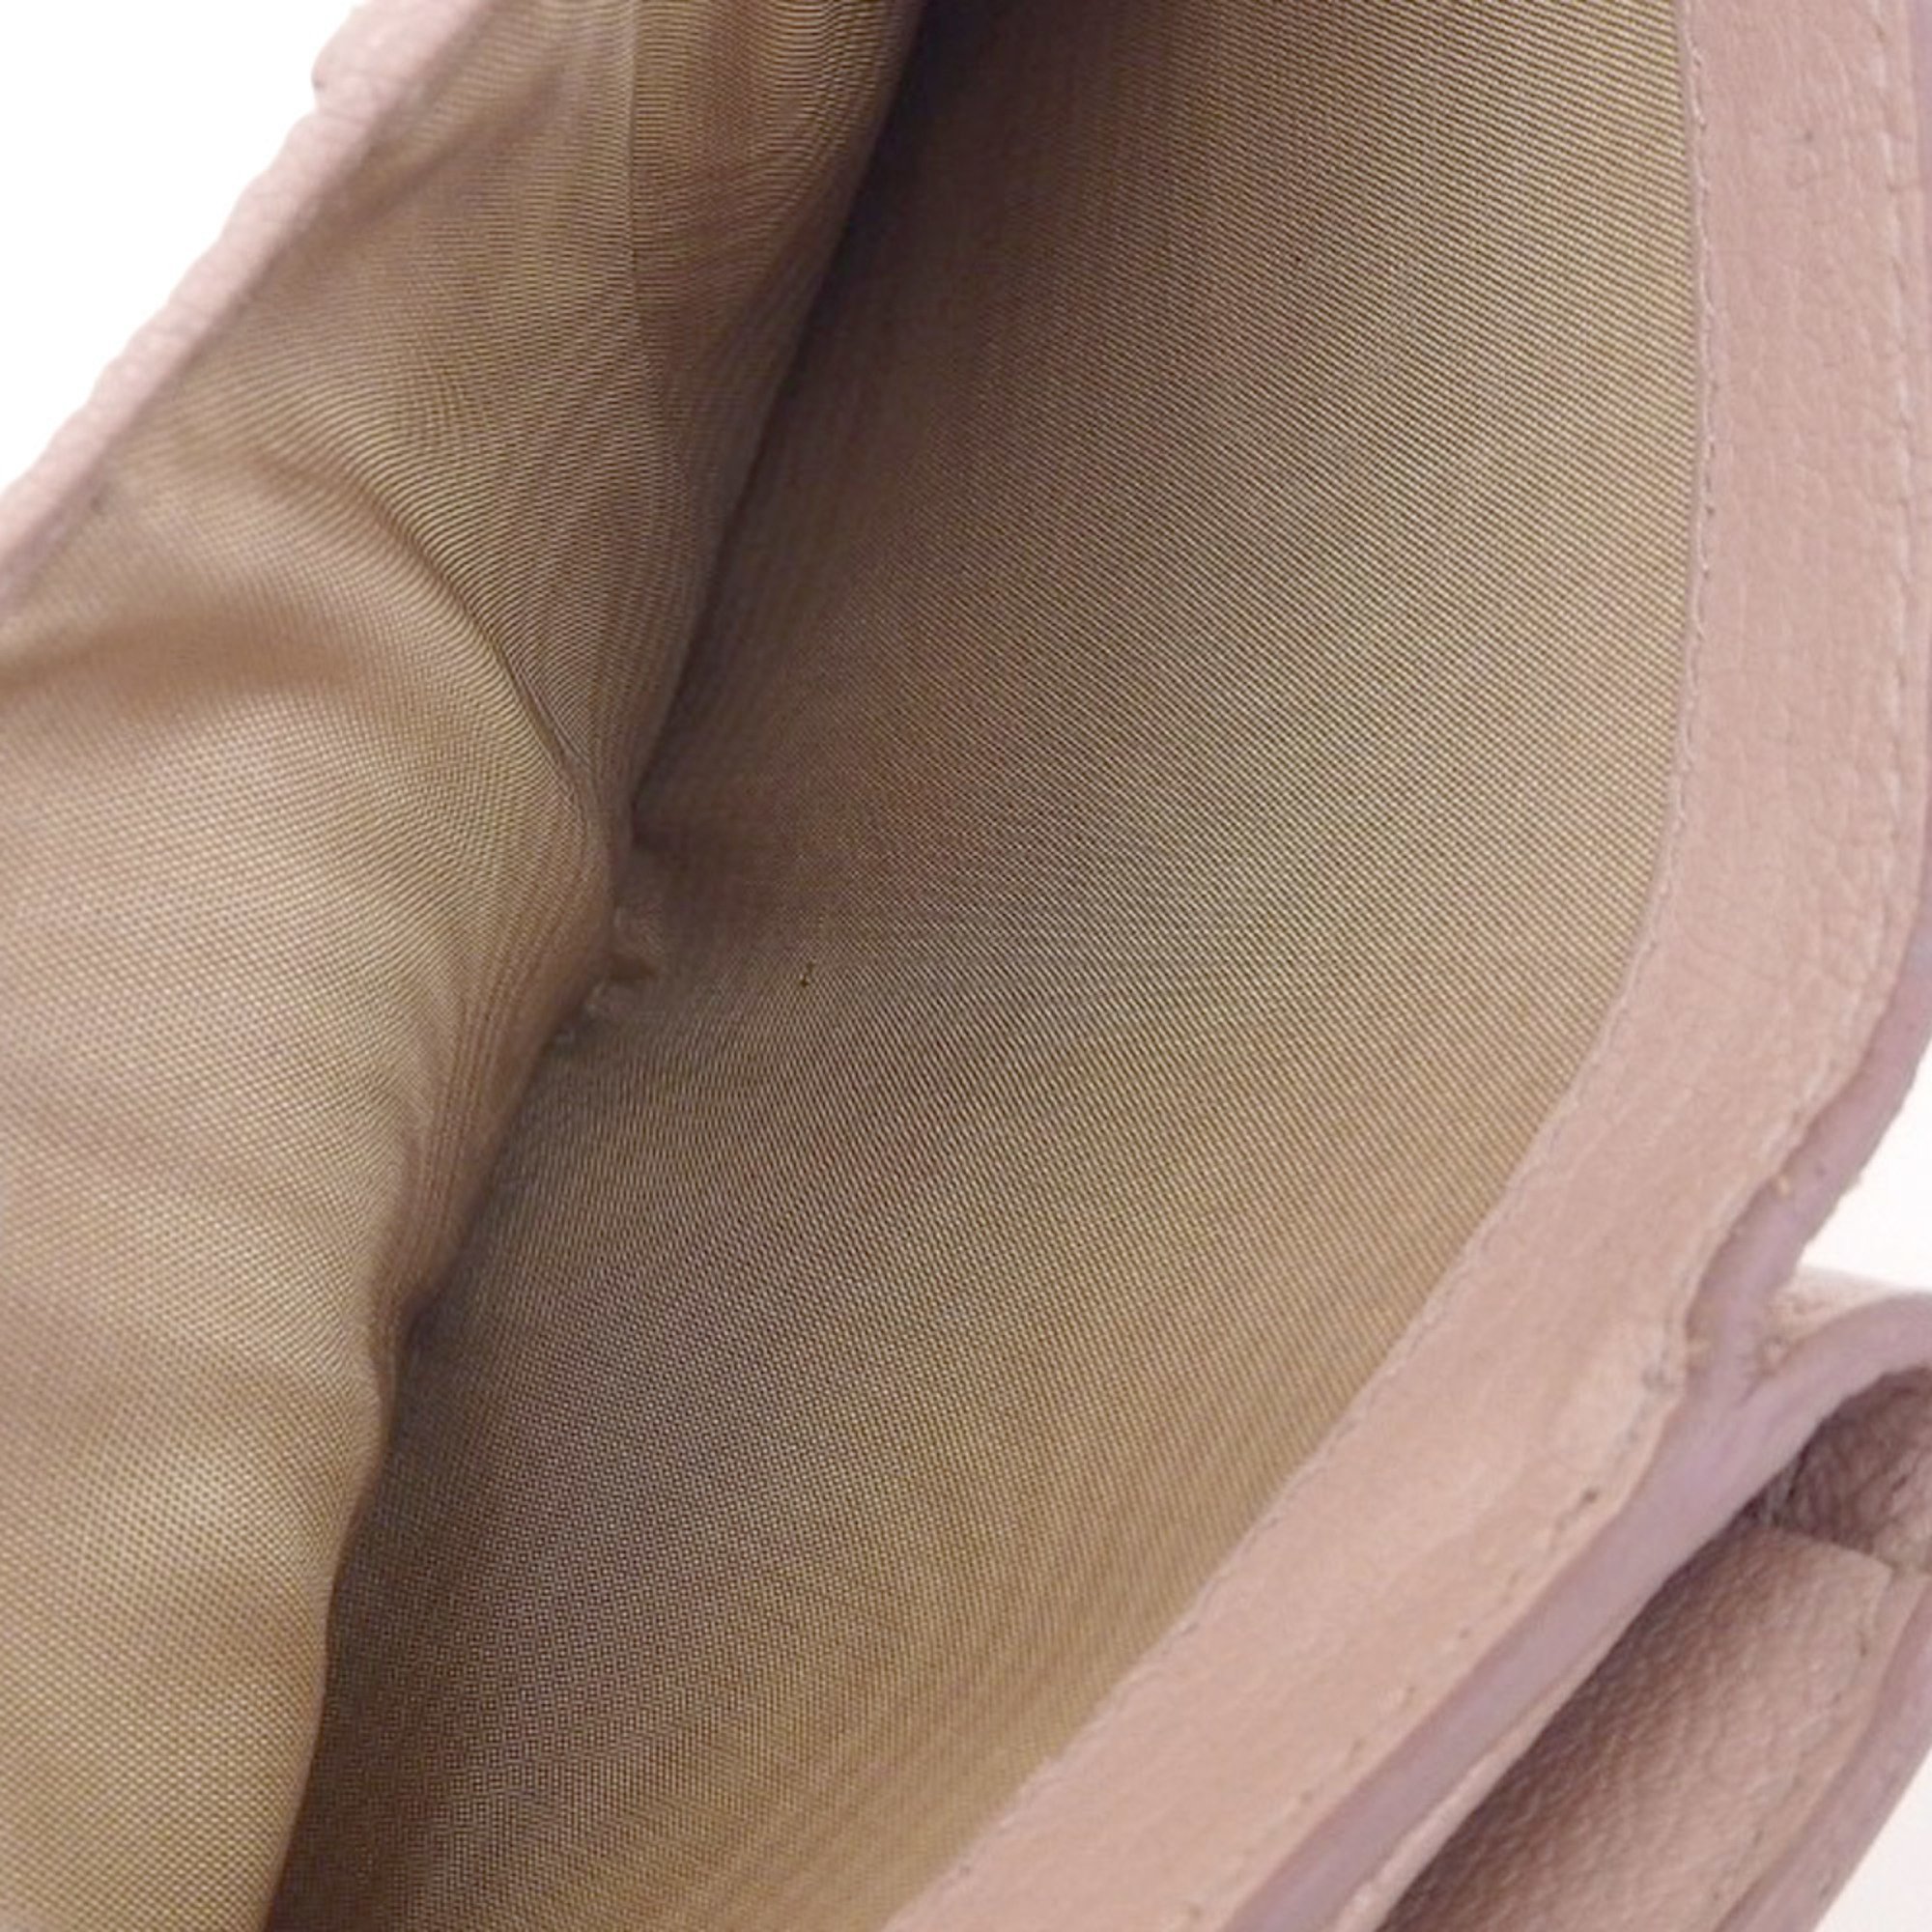 Miu MIUMIU L-shaped zipper tri-fold wallet pink 5ML014